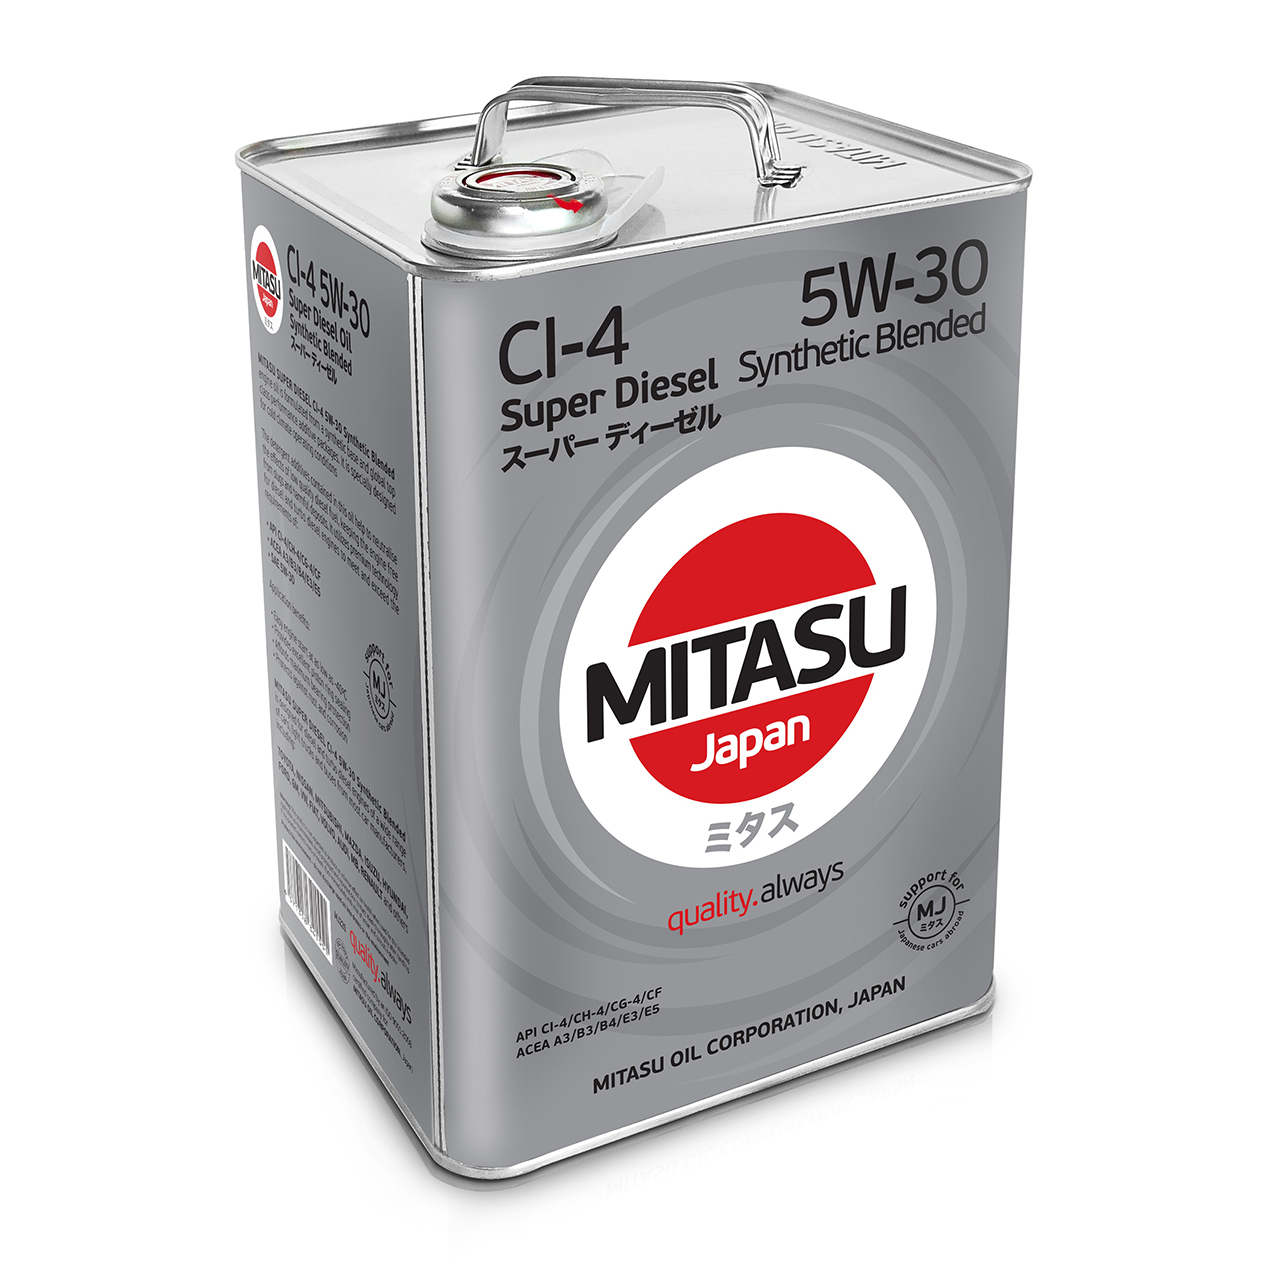 Купить запчасть MITASU - MJ2206 Масло моторное MITASU SD CI-4 5W30 6л п/синтетическое для дизельных двигателей MJ220 (1/4) Япония